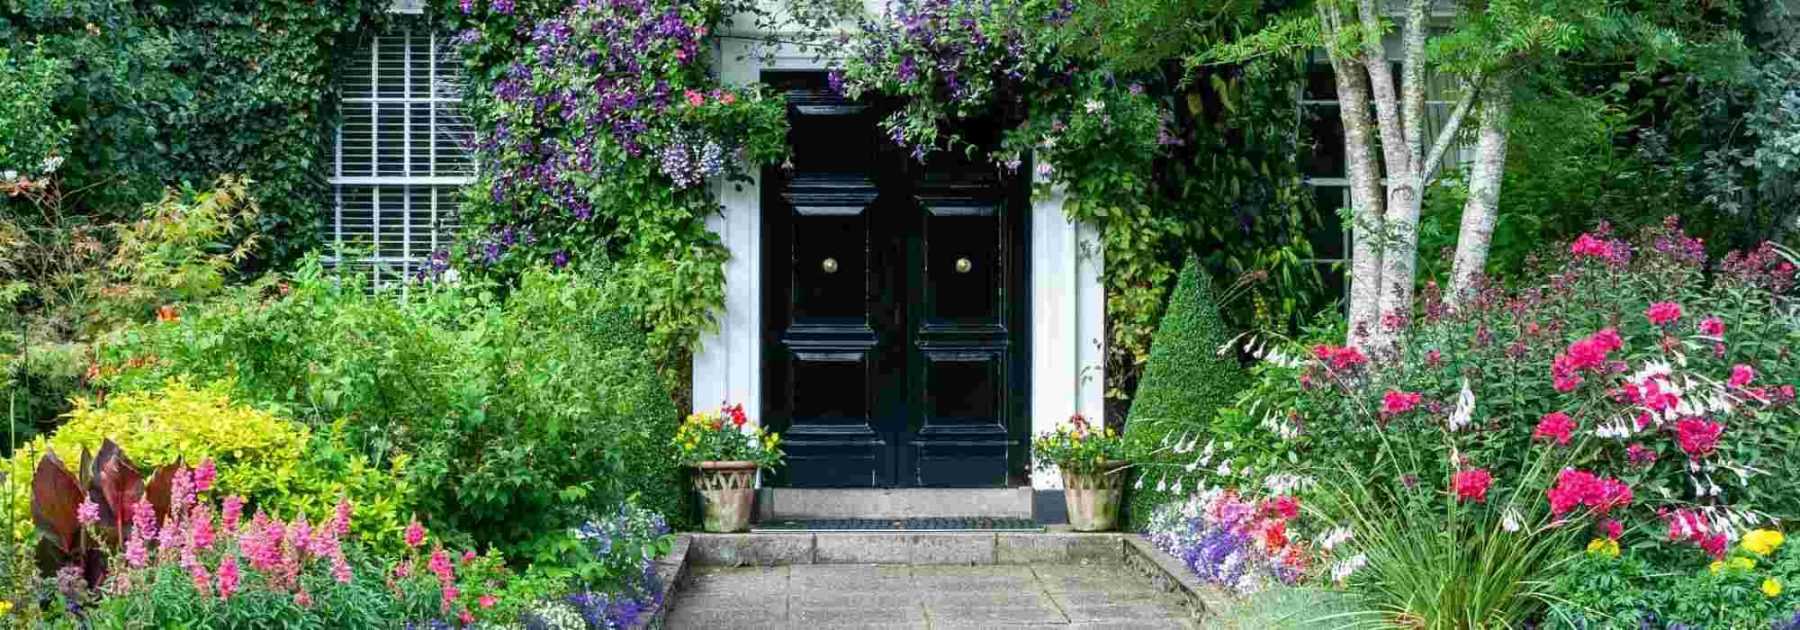 5 Conseils pour rentrer les plantes d'extérieur dans la maison